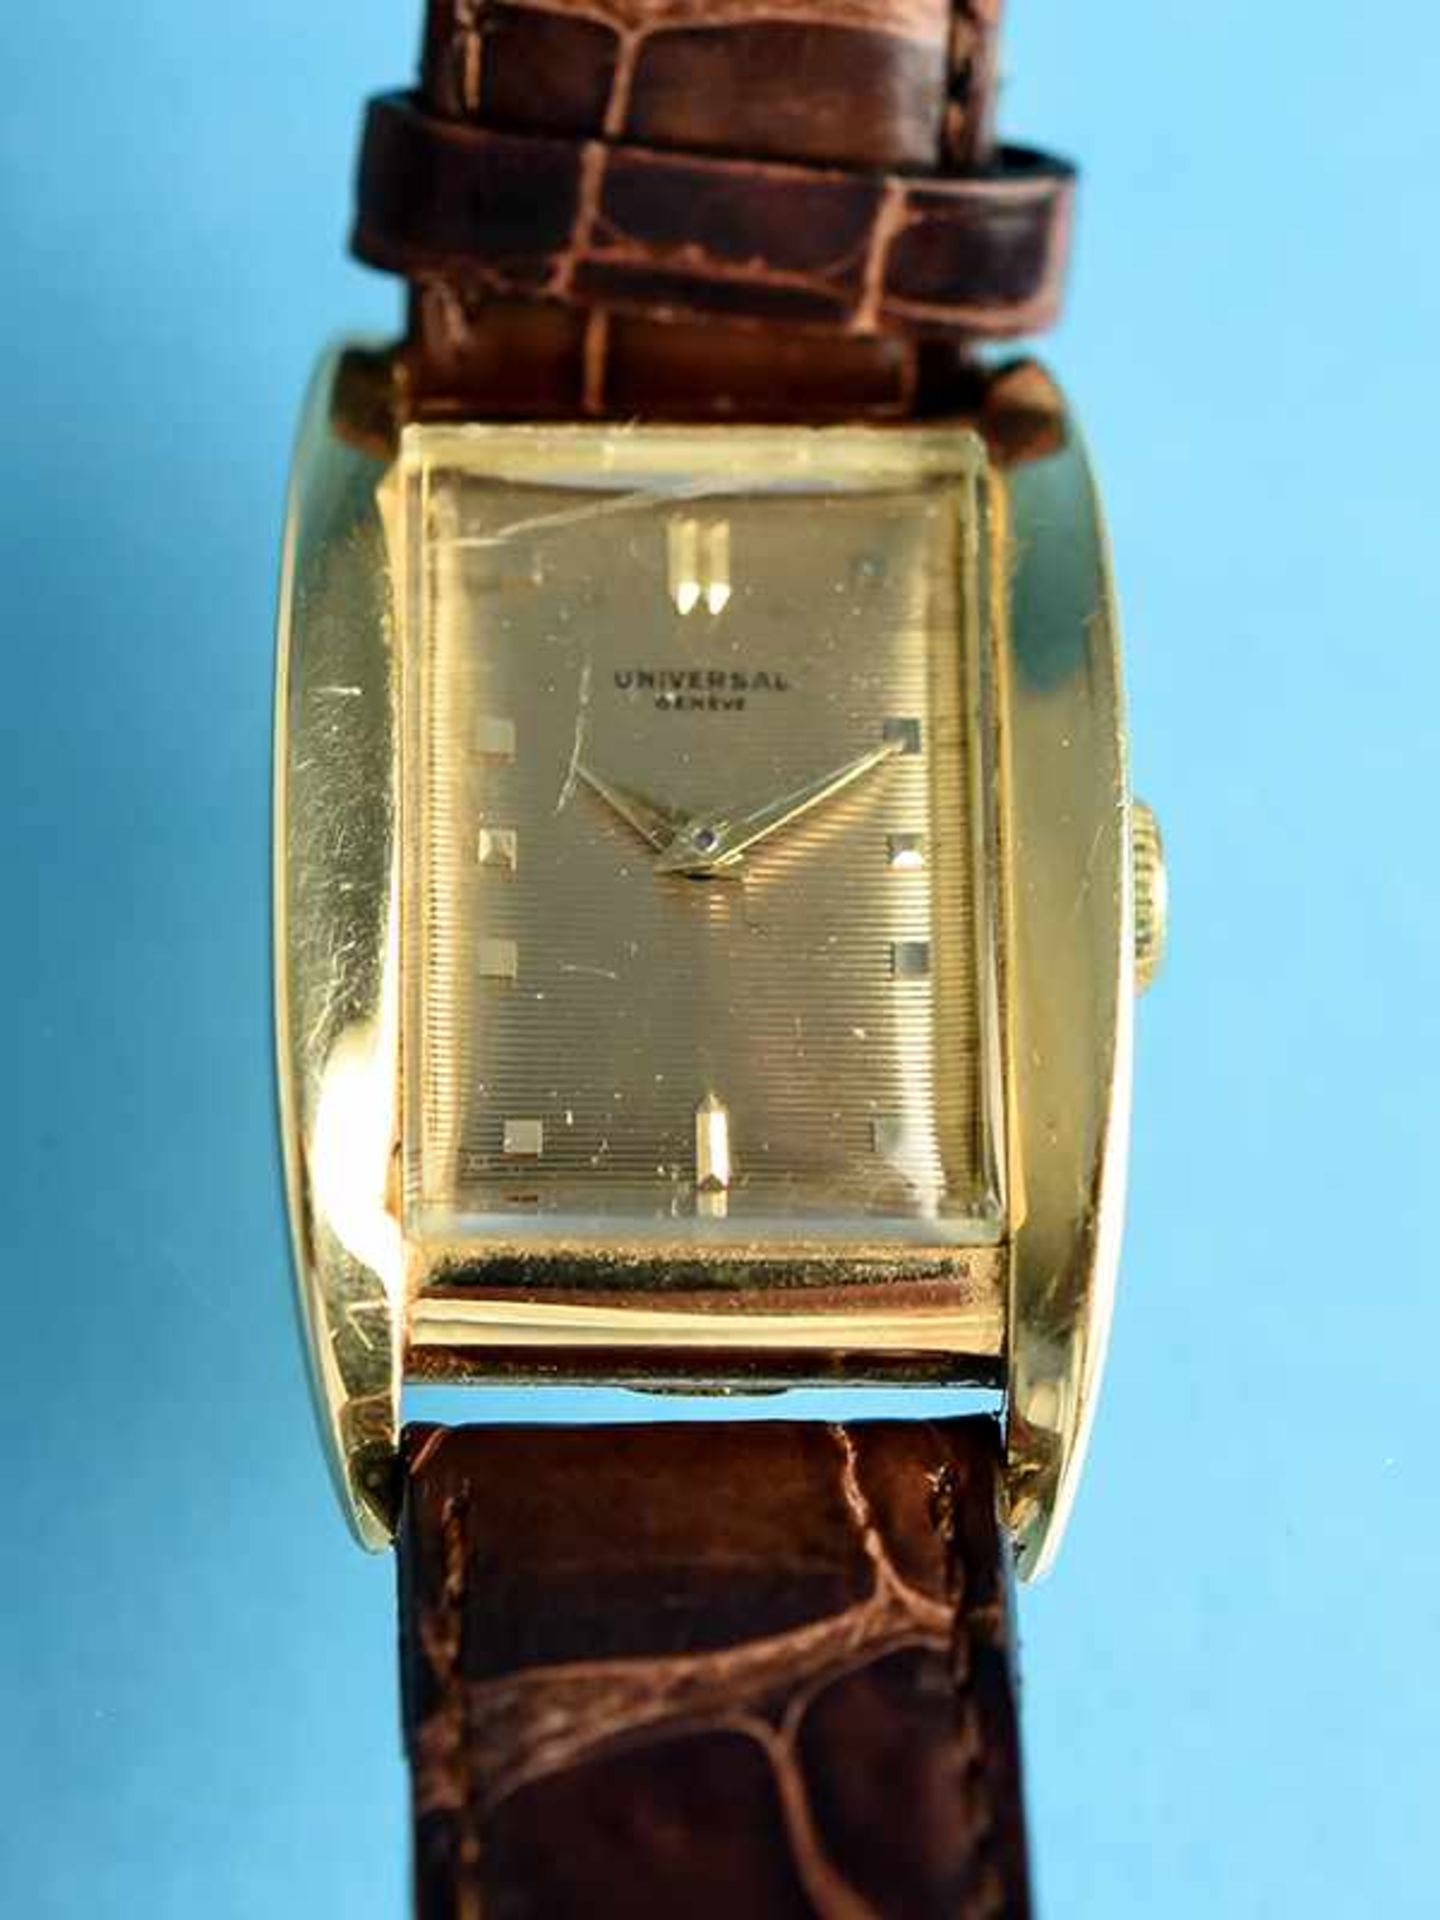 Armbanduhr, bezeichnet Universal, Genève, 20. Jh. 750/- Gelbgold-Gehäuse mit Lederarmband (nicht